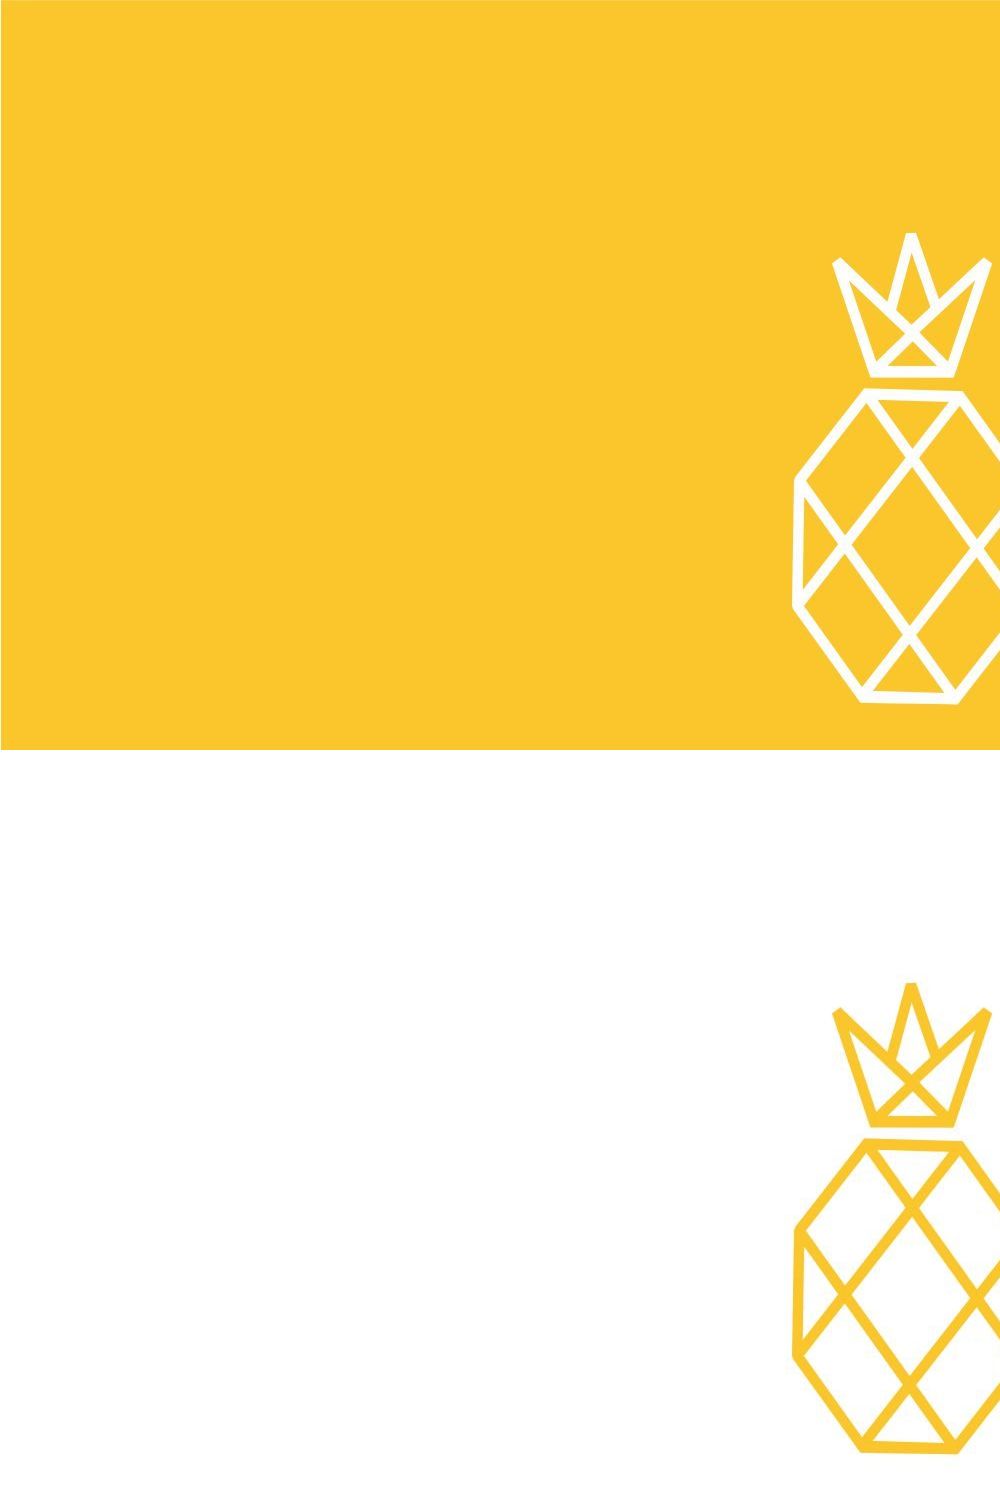 Monoline Pineapple Logo Vector pinterest preview image.